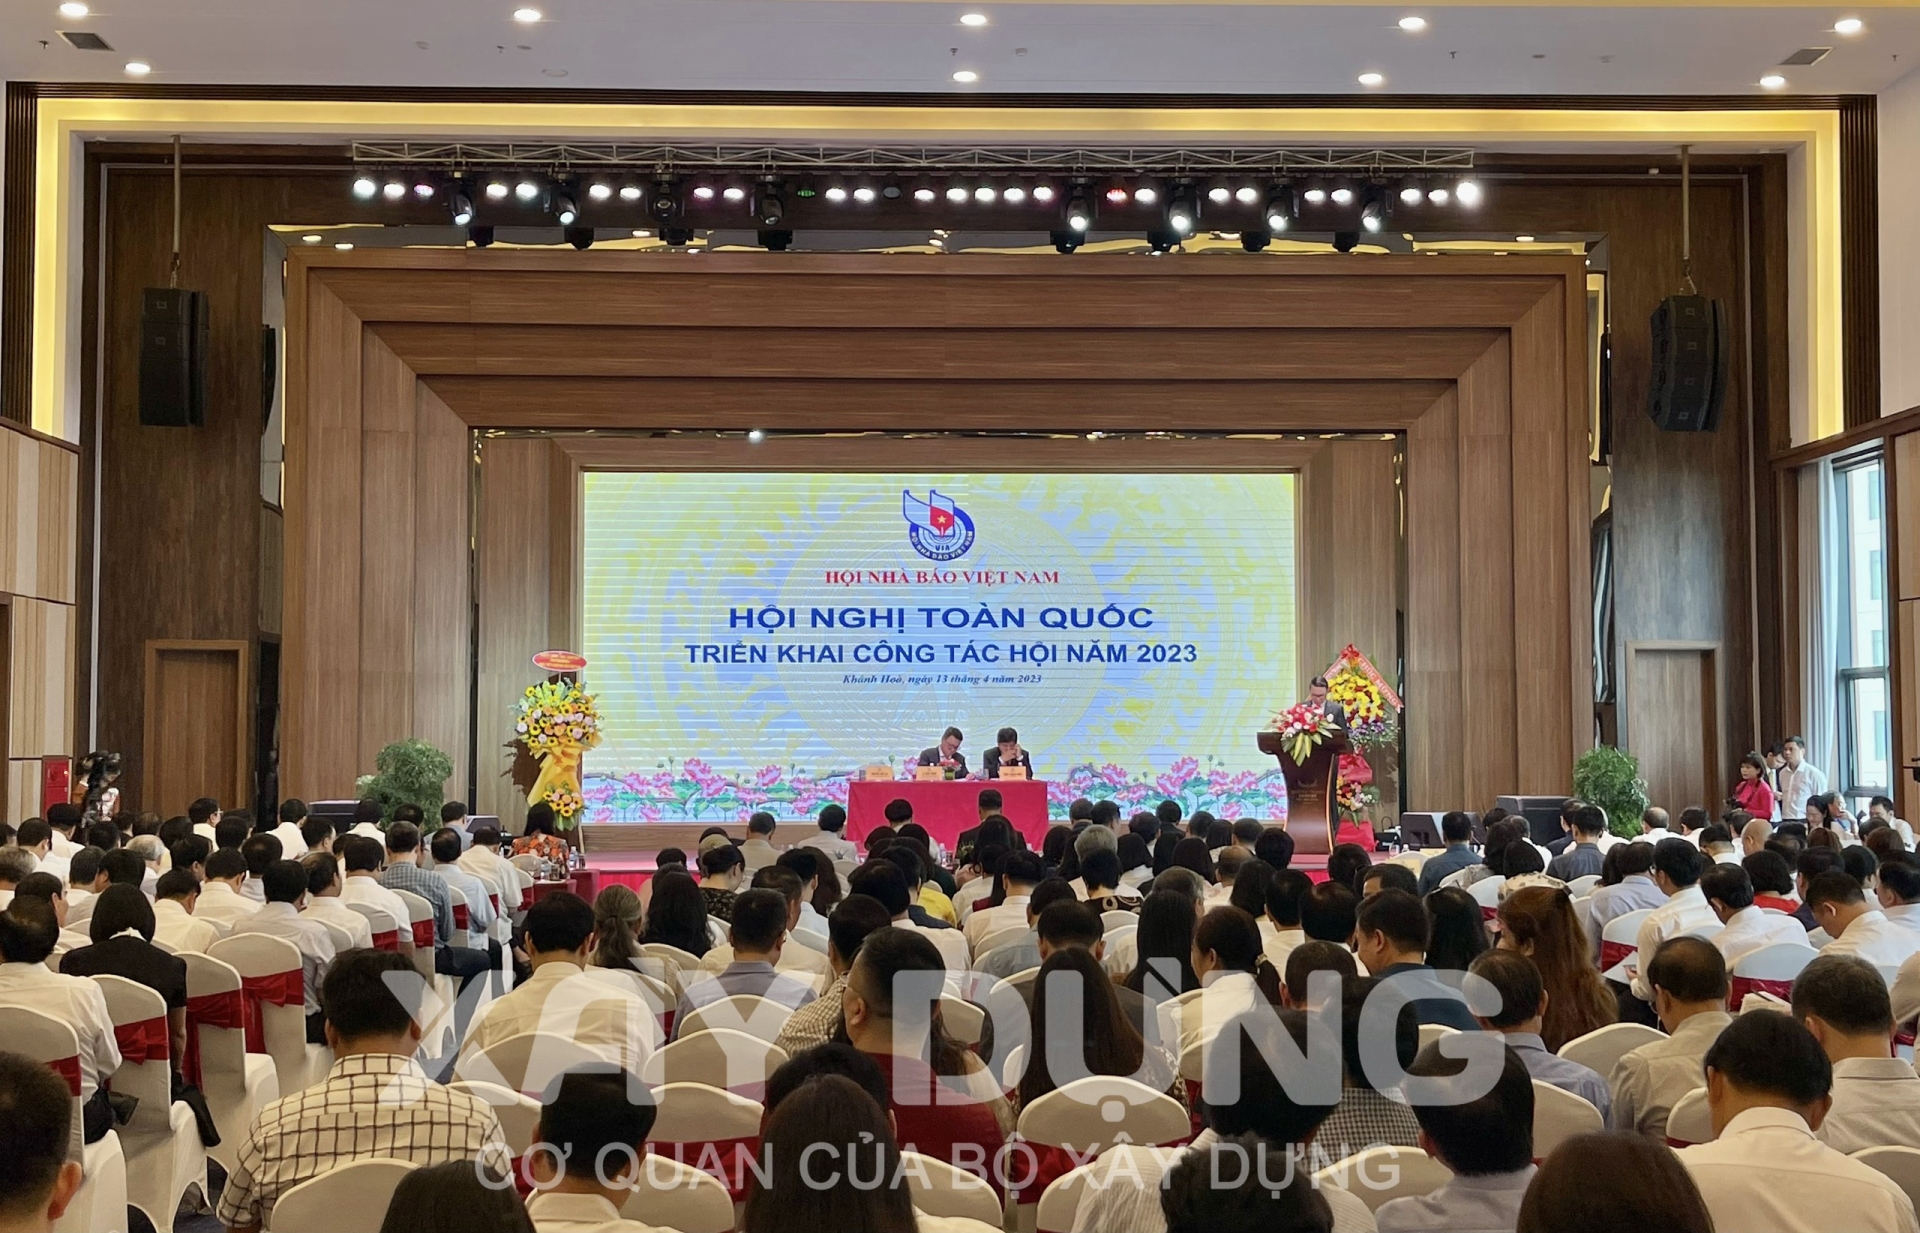 Hội Nhà báo Việt Nam tổ chức Hội nghị toàn quốc triển khai công tác hội năm 2023